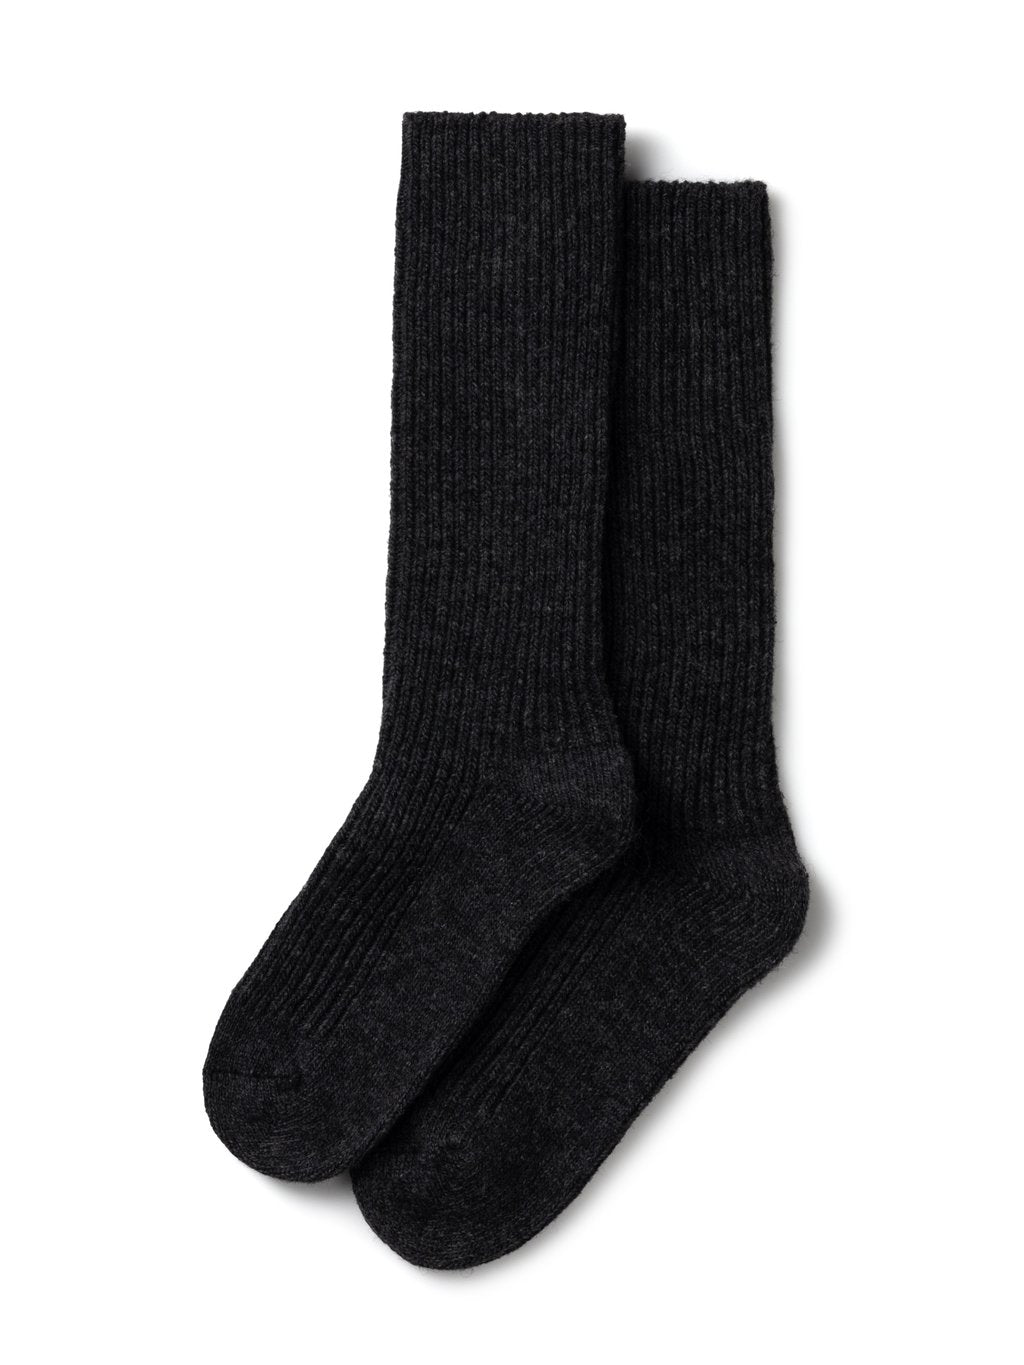 Wool Blend Rib Sock | Charcoal - The Voewood